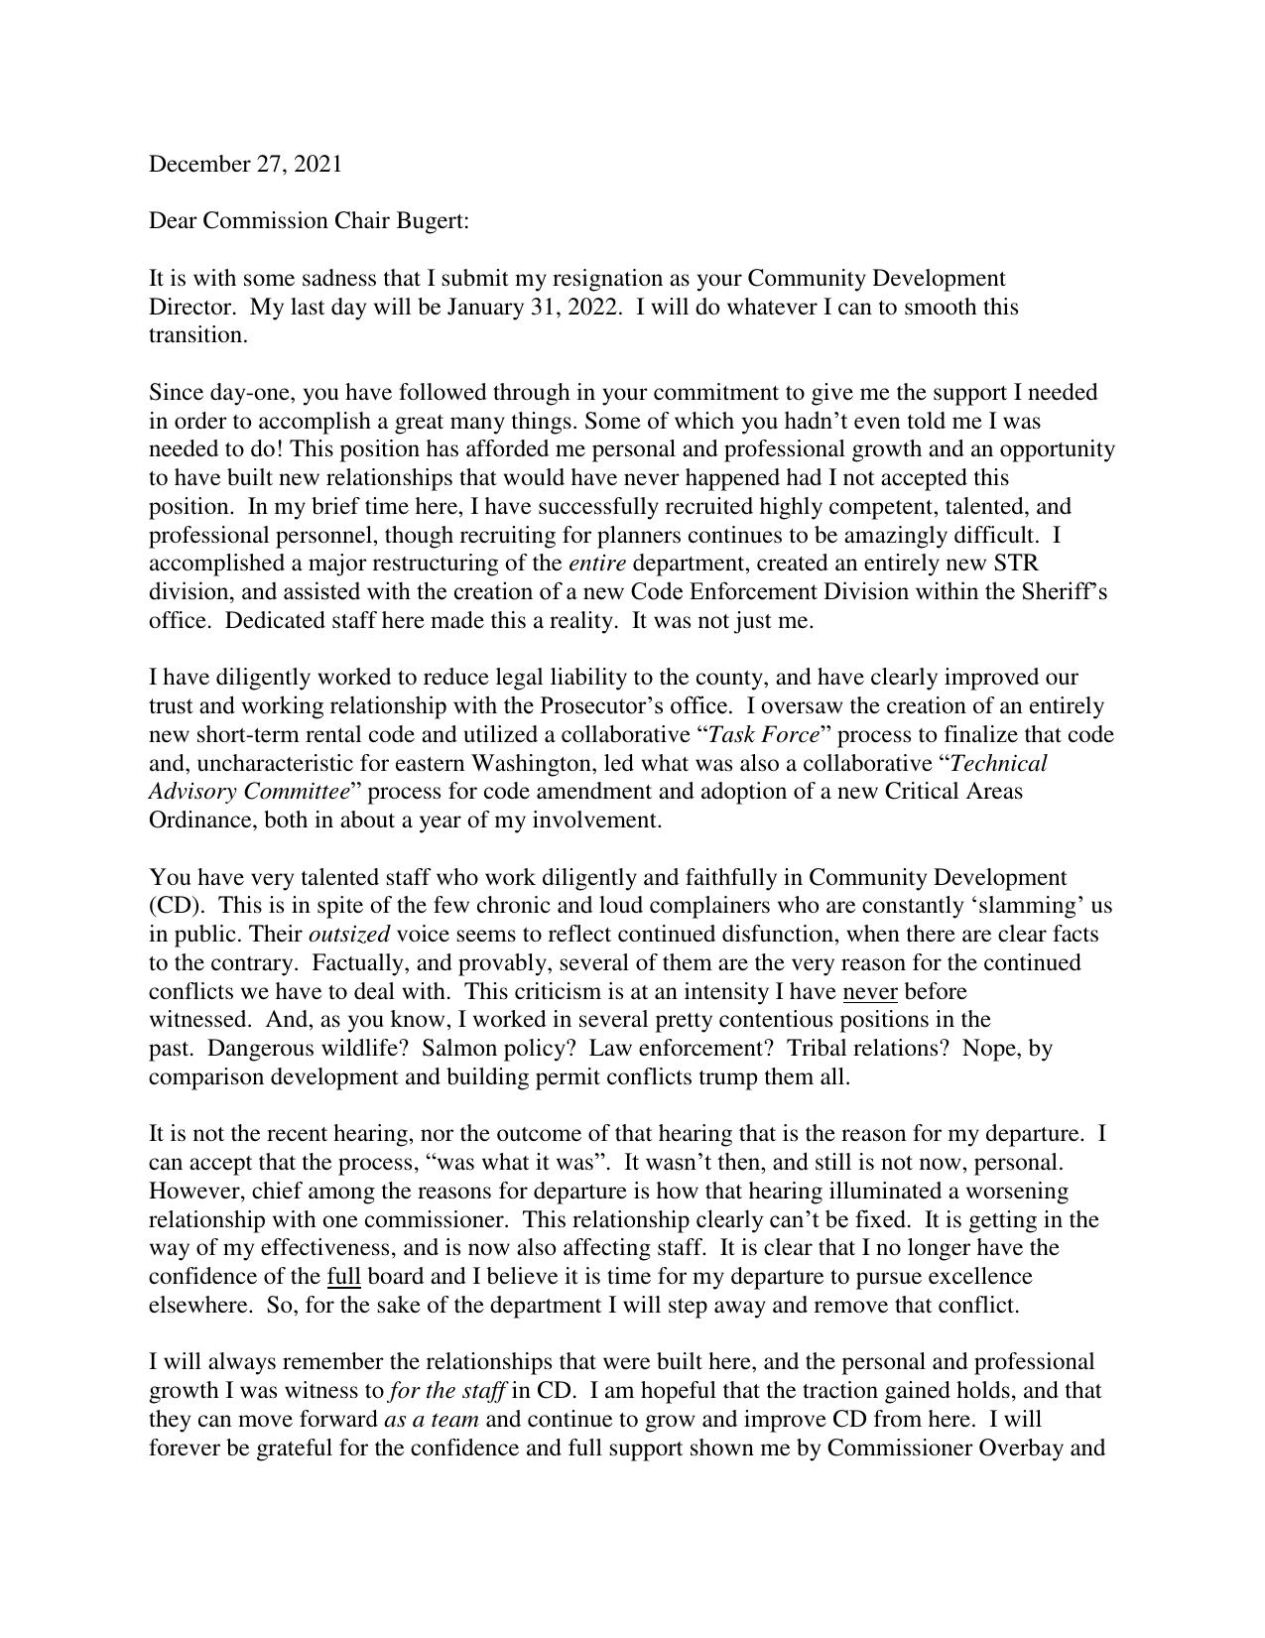 Jim Brown resignation letter